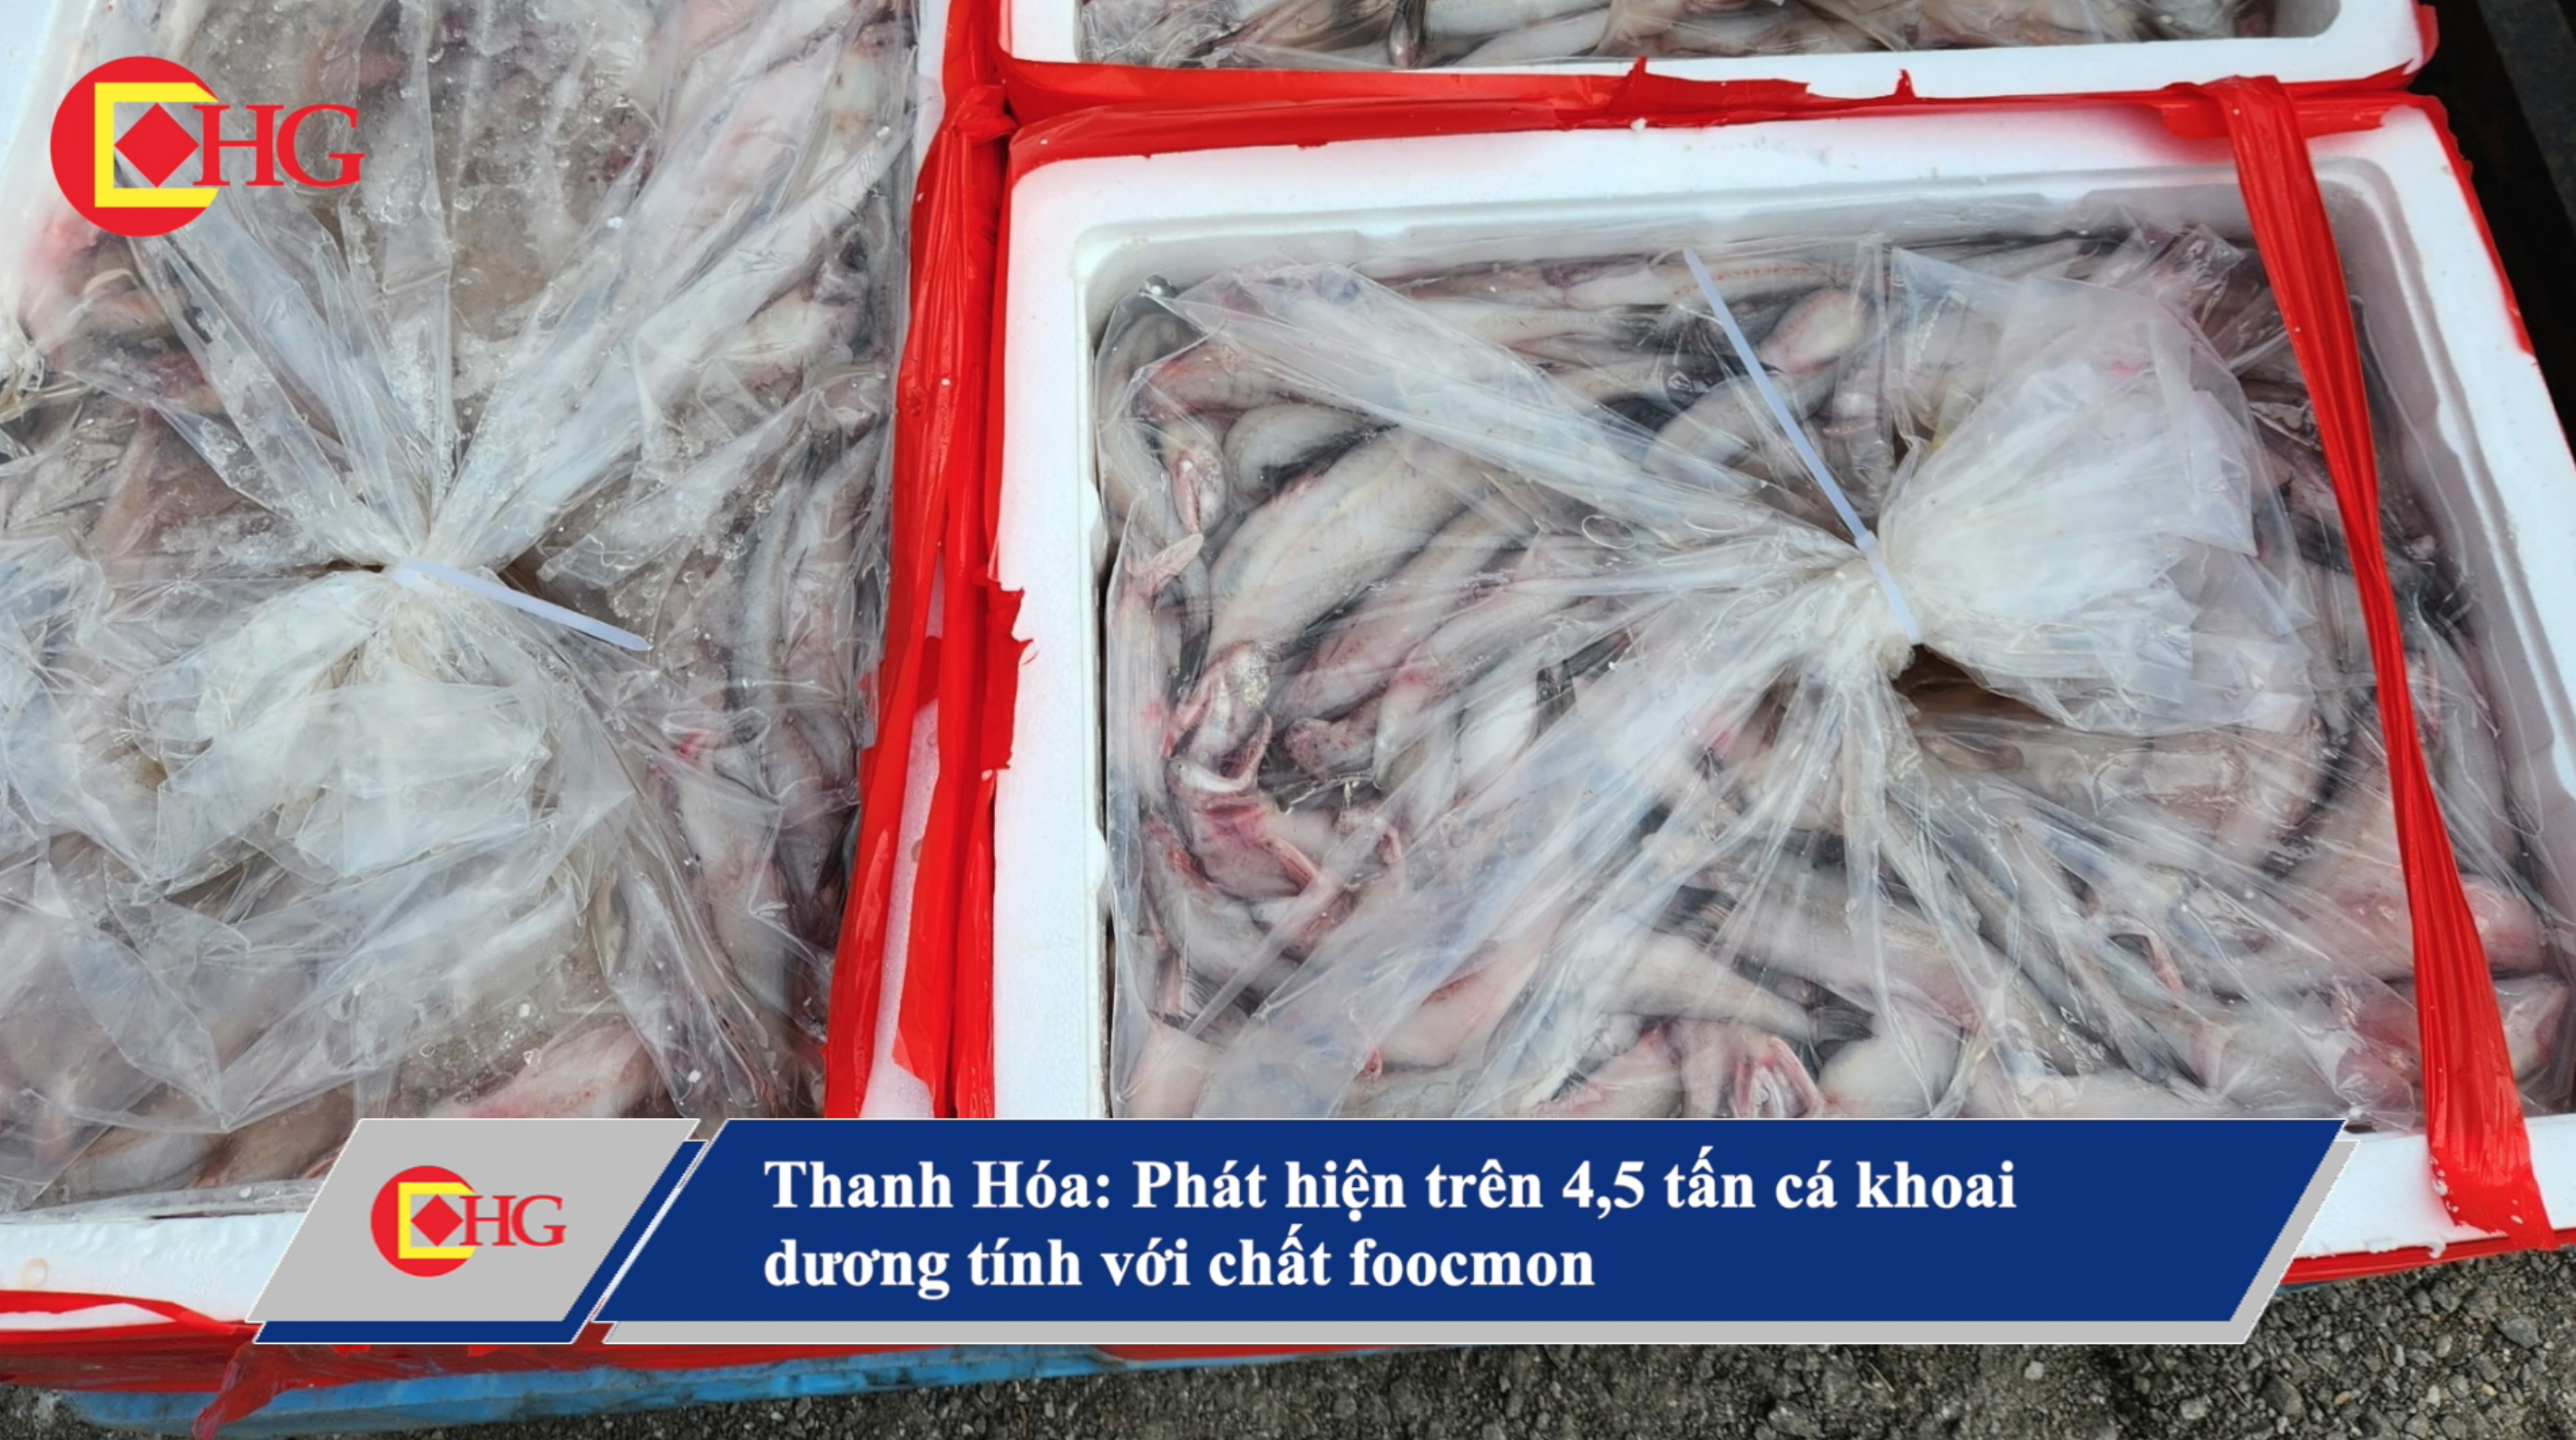 Thanh Hóa: Phát hiện trên 4,5 tấn cá khoai dương tính với chất foocmon